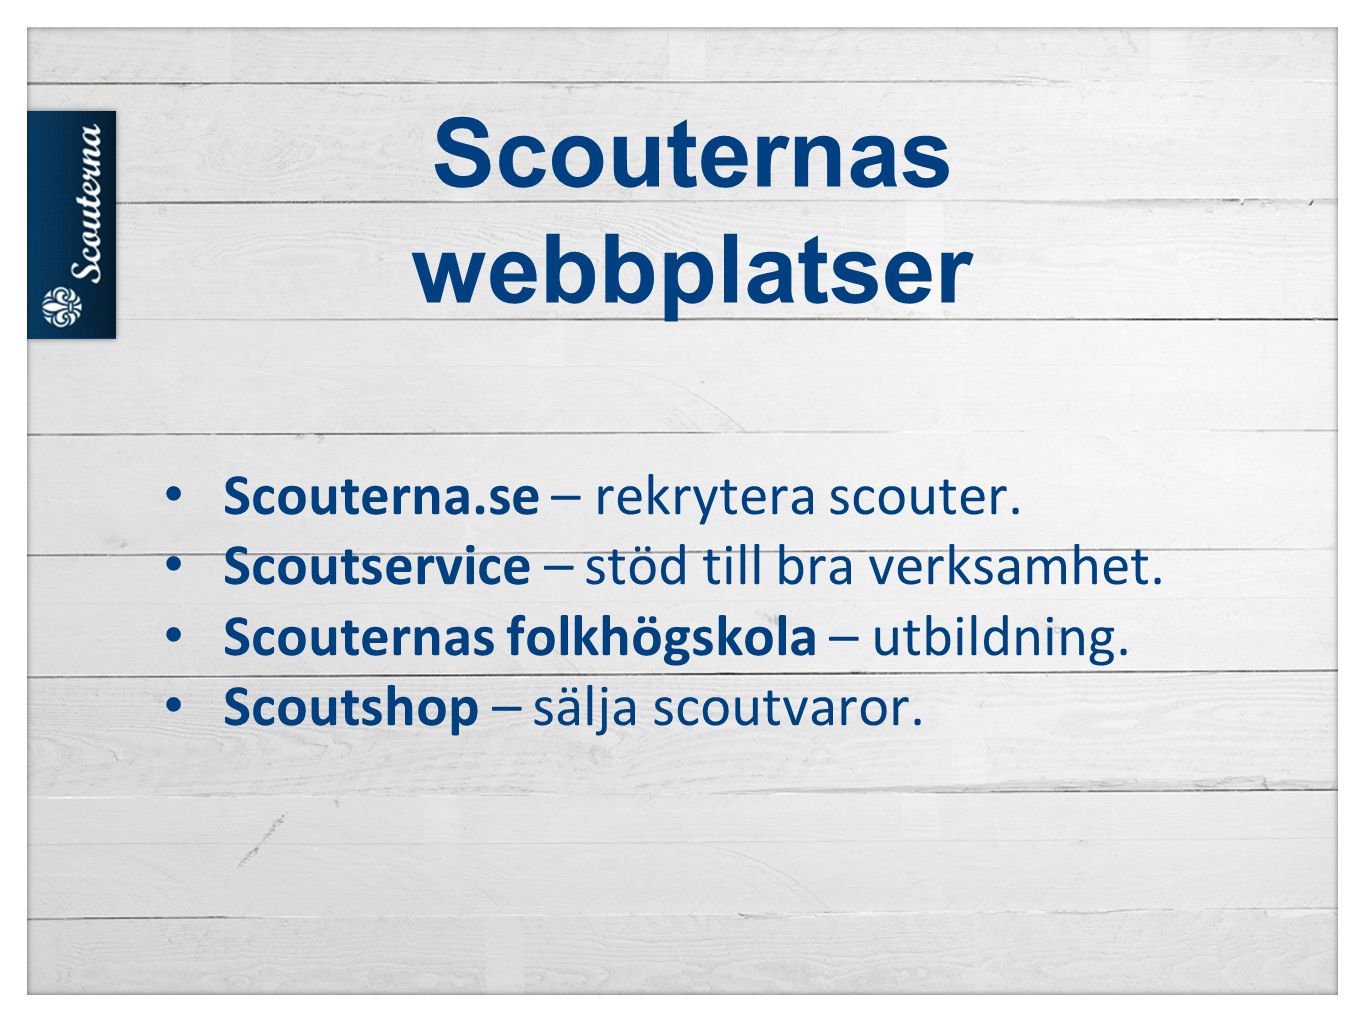 Scouternas webbplatser